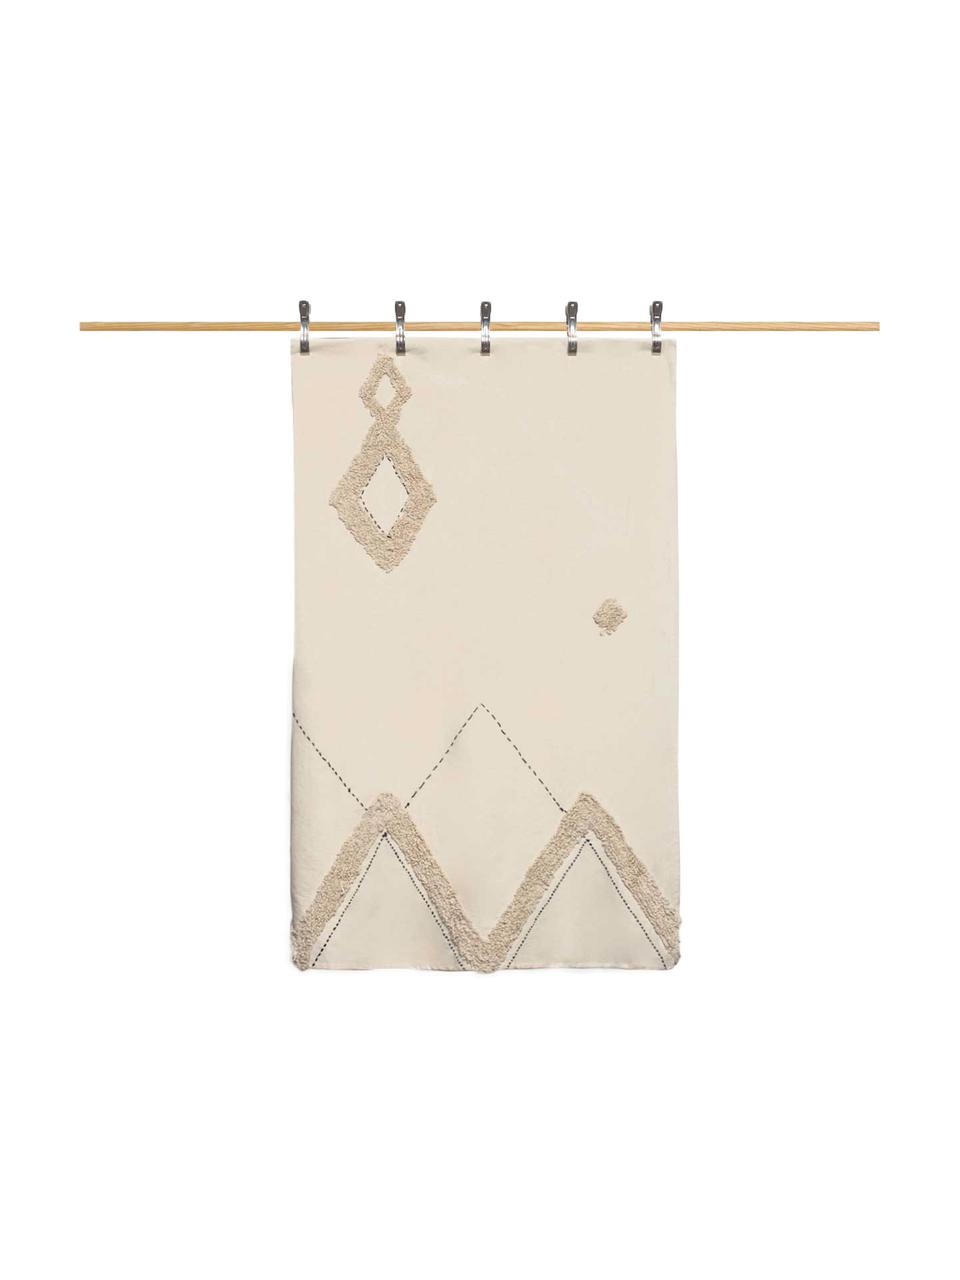 Bedsprei Royal met hoog-laag patroon, Katoen, Crèmewit, bruin, 270 x 280 cm